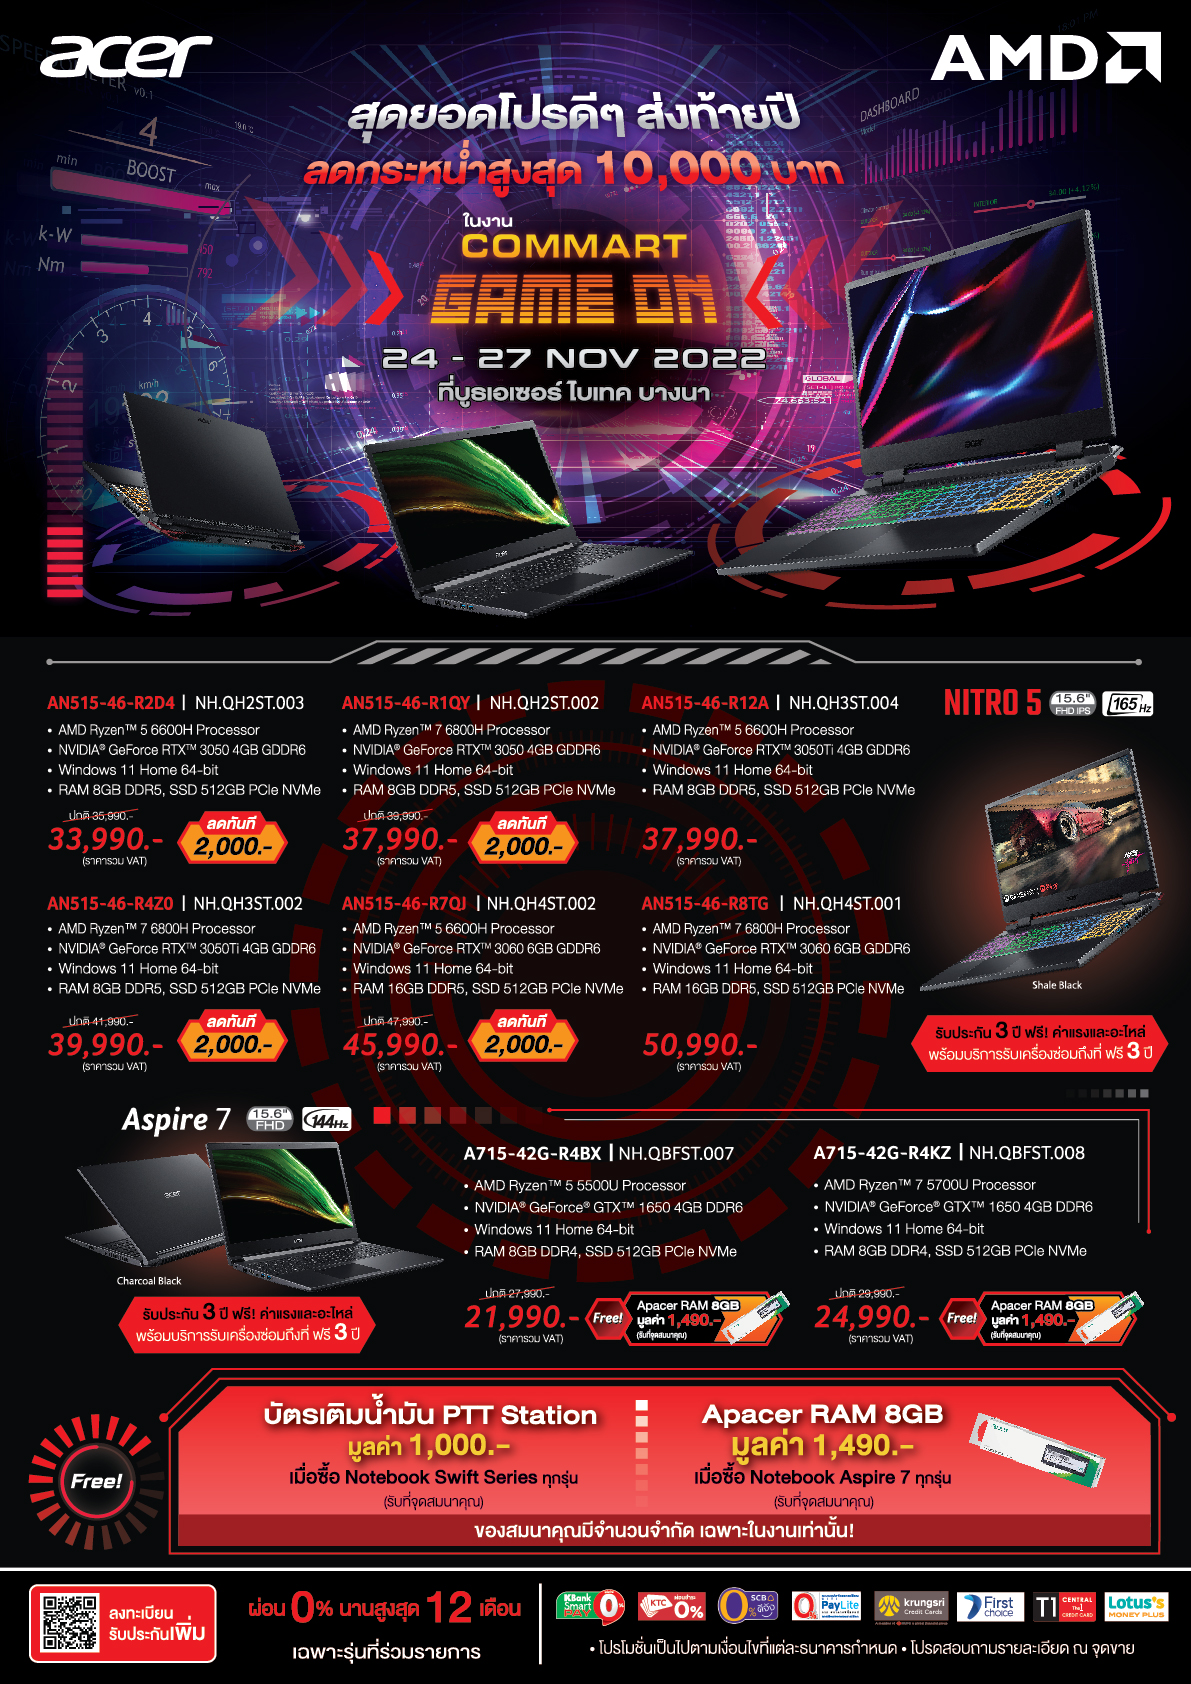 amd commart nov 2022 01 Acer x AMD Commart   Game On (24 27 Nov22) Promotion โปรโมชั่นสุดพิเศษจากทาง Acer ร่วมกับ AMD ในงาน Commart   Game On วันที่ 24 27 พ.ย. 2565 นี้ ลดราคาอย่างมากมายพร้อมของแถมสุดพิเศษอีกหลายรายการ